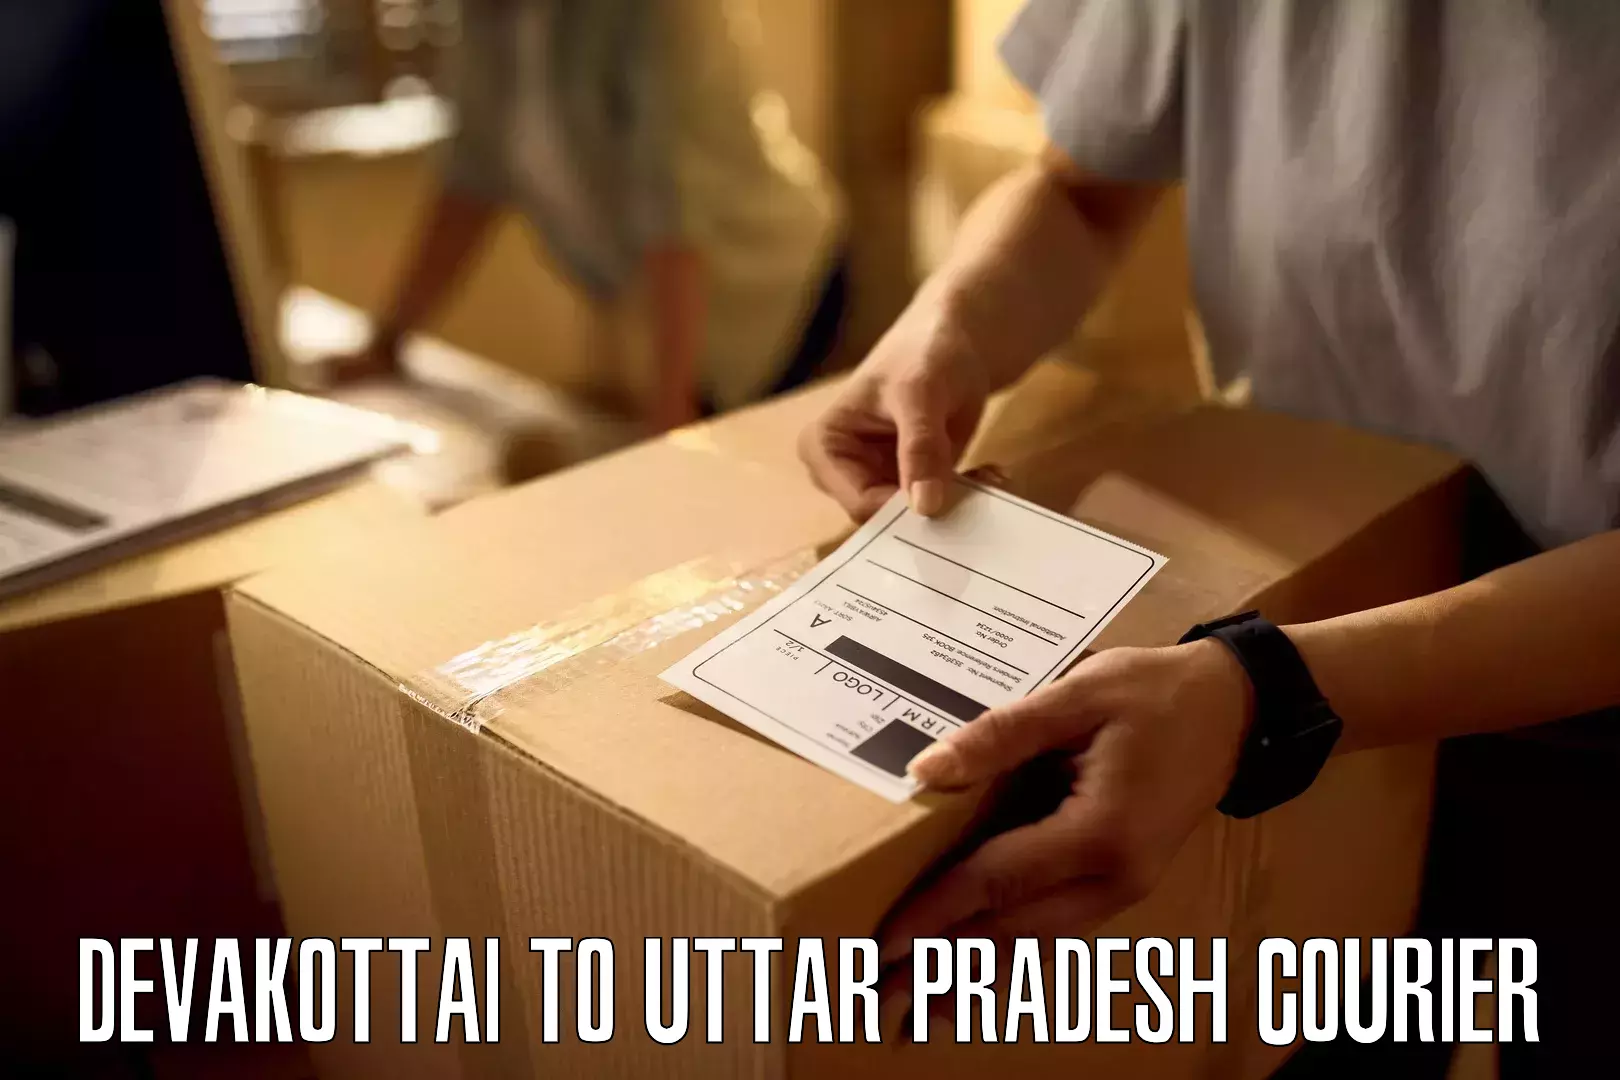 Modern parcel services Devakottai to Barabanki